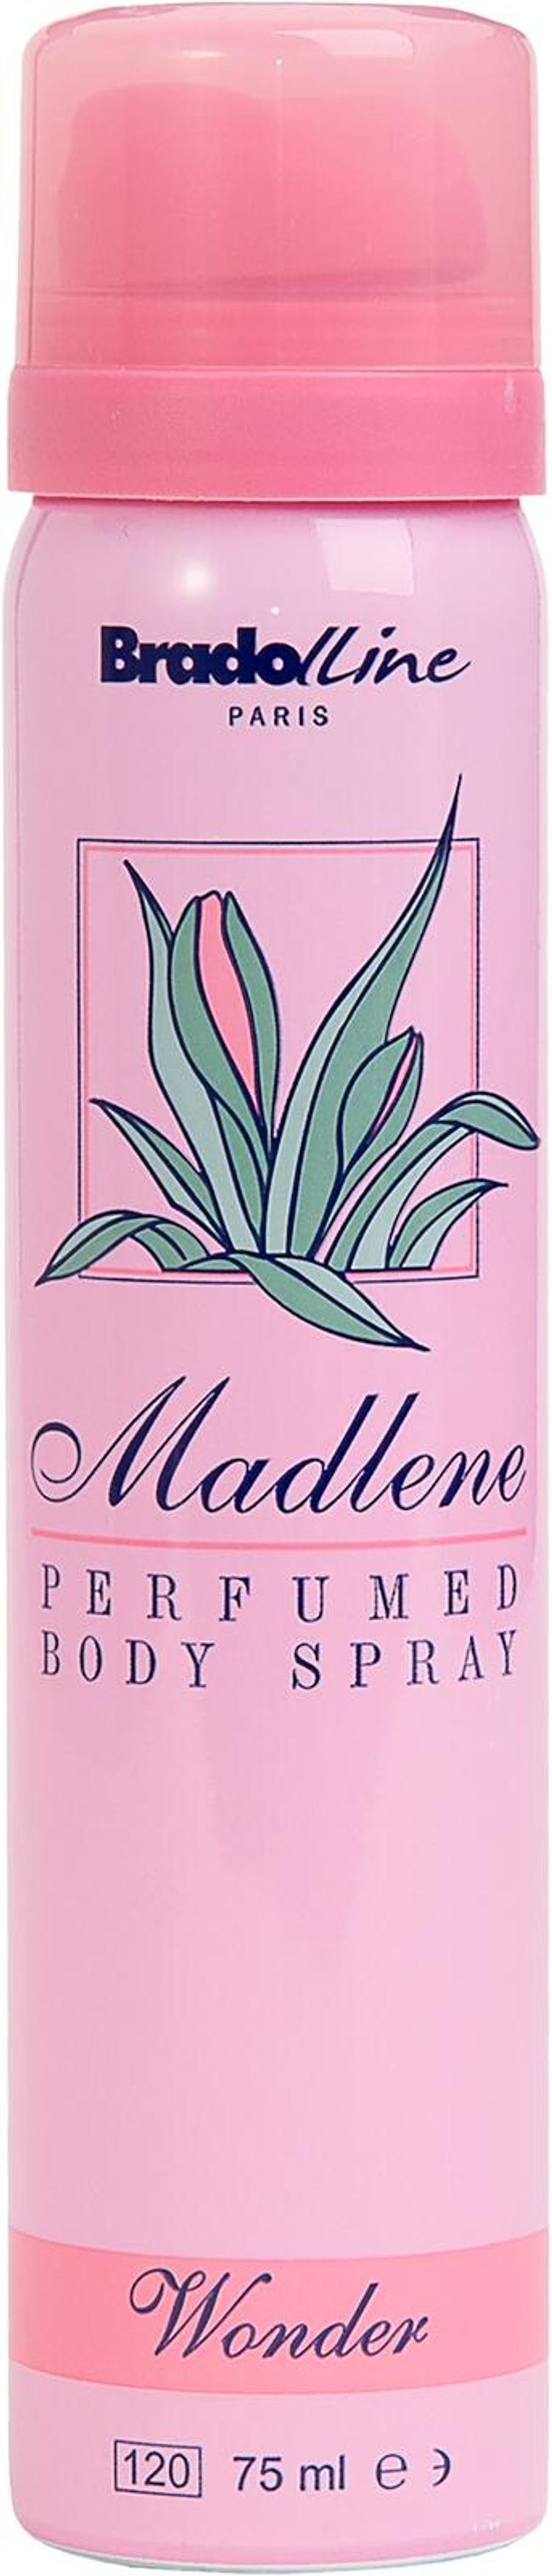 Madlene Body Spray Wonder 75 ml